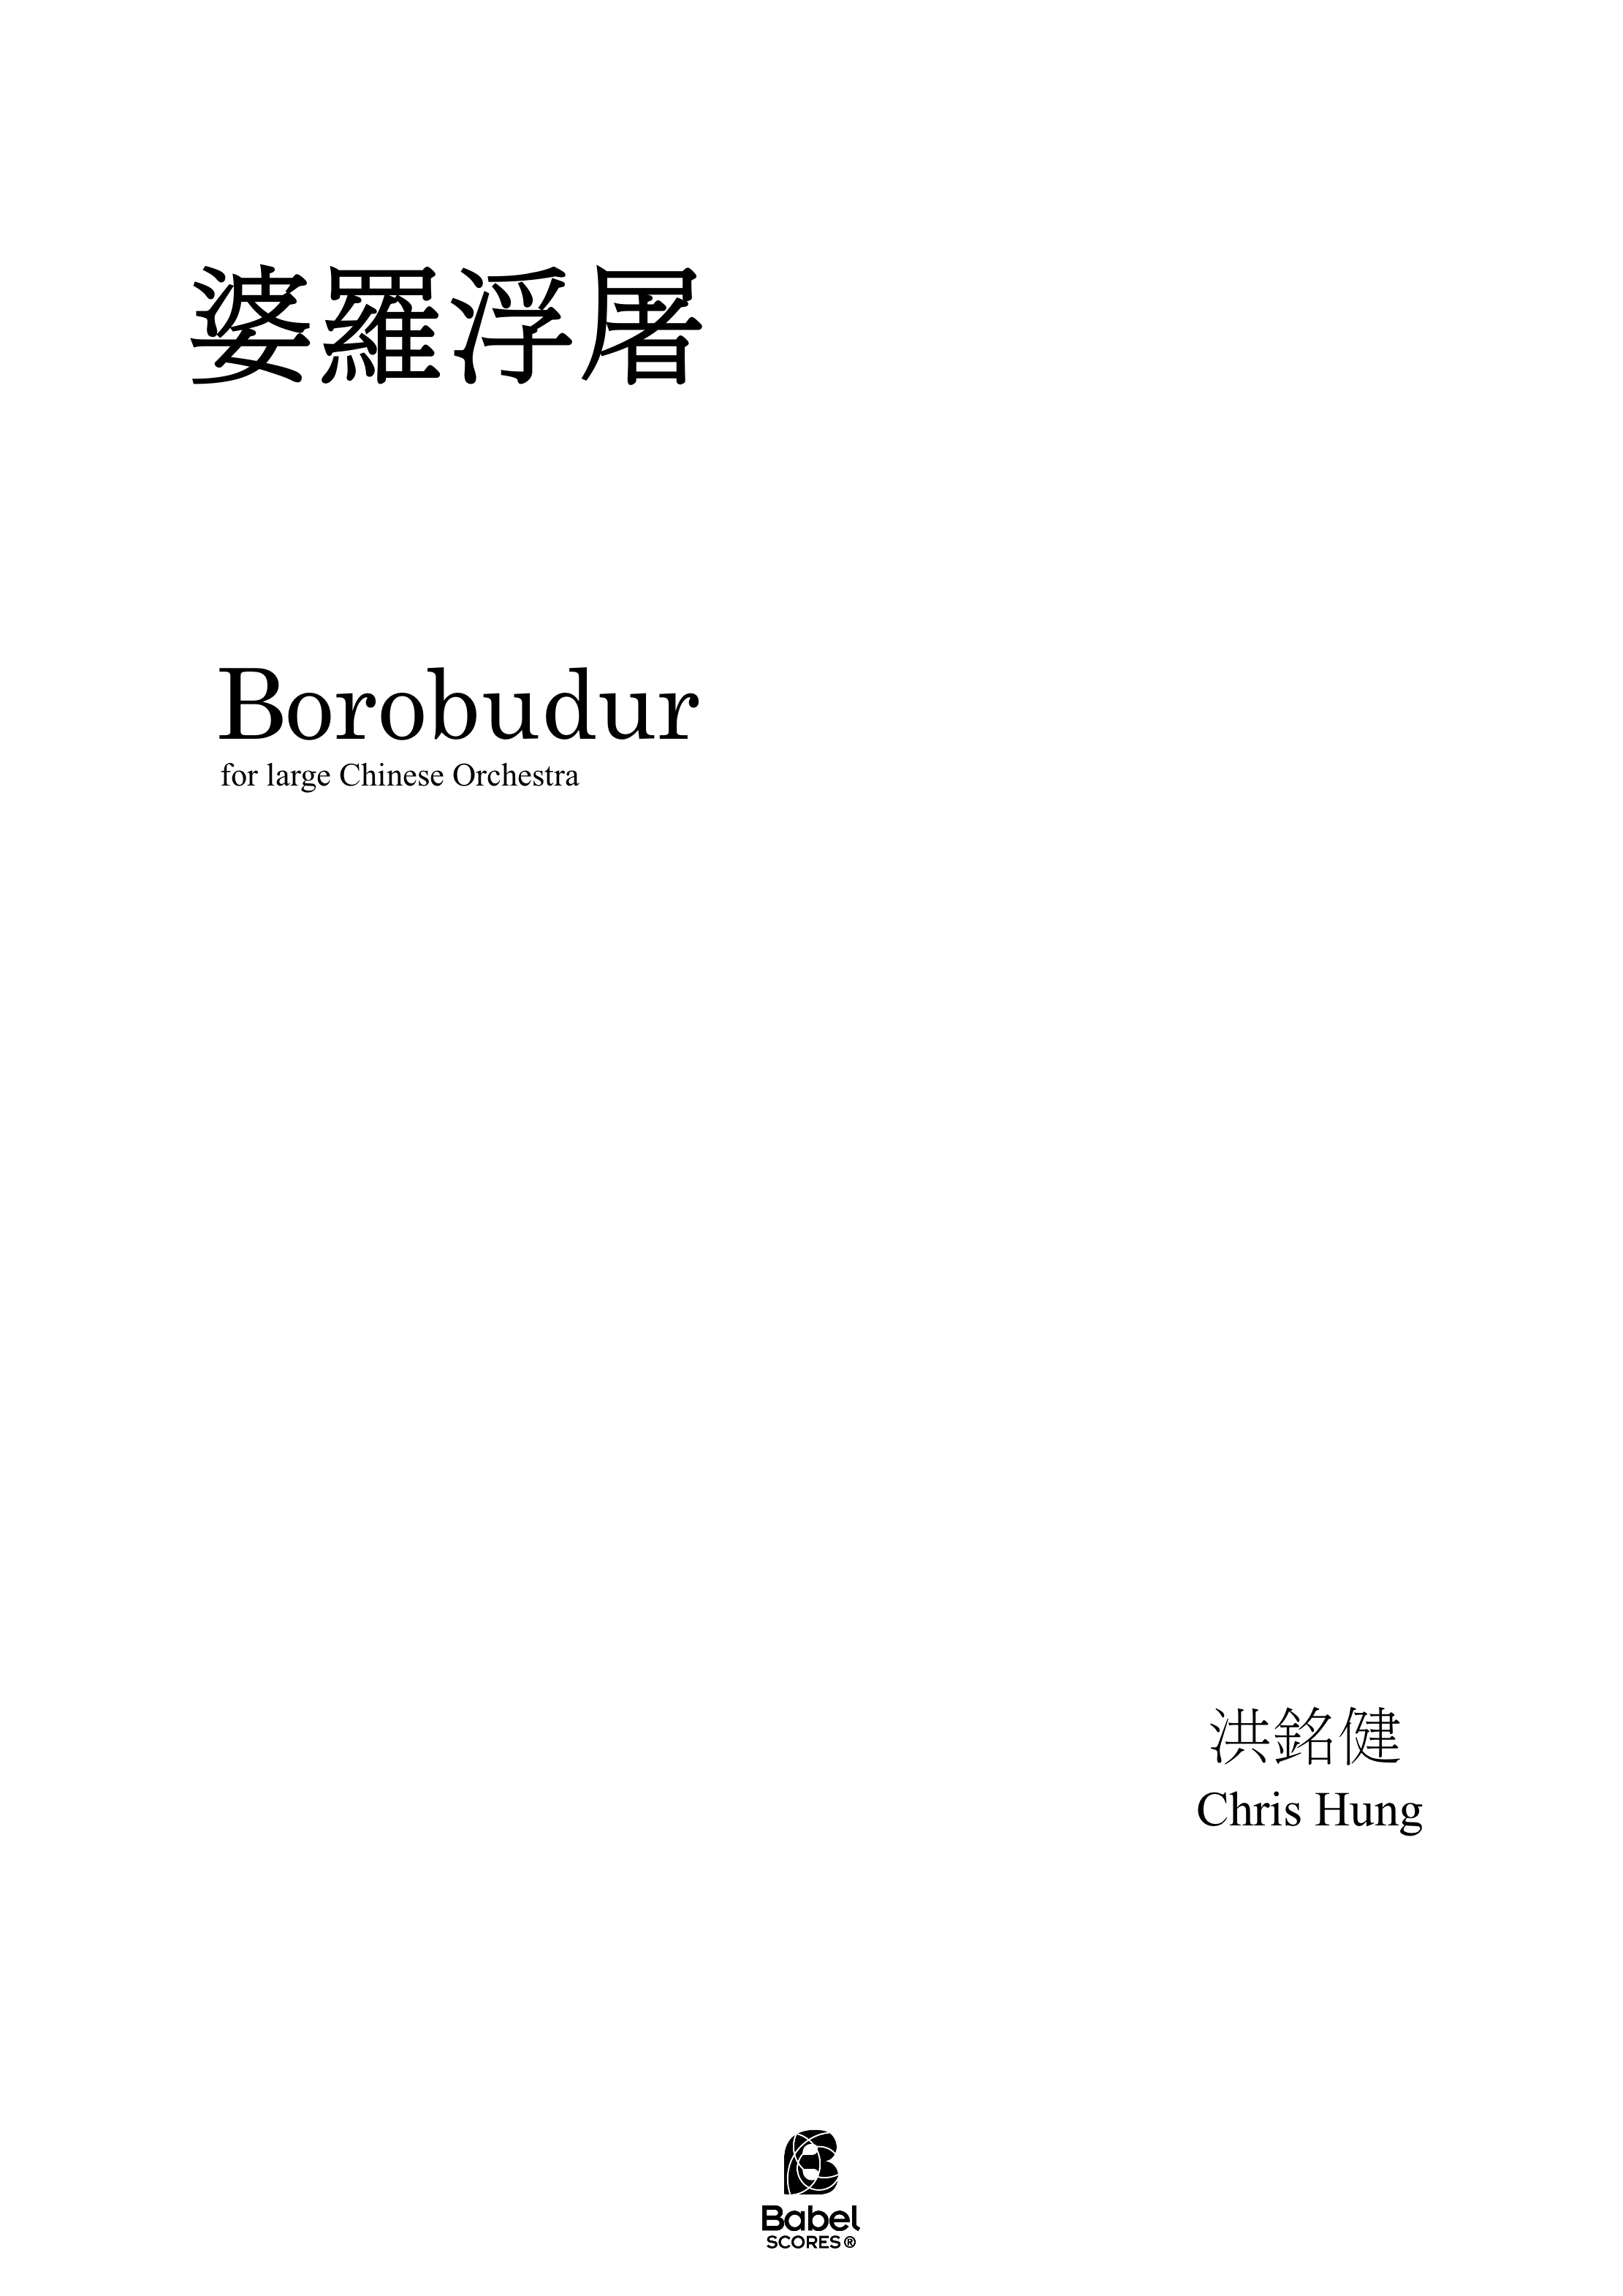 Borobudur double A3 z